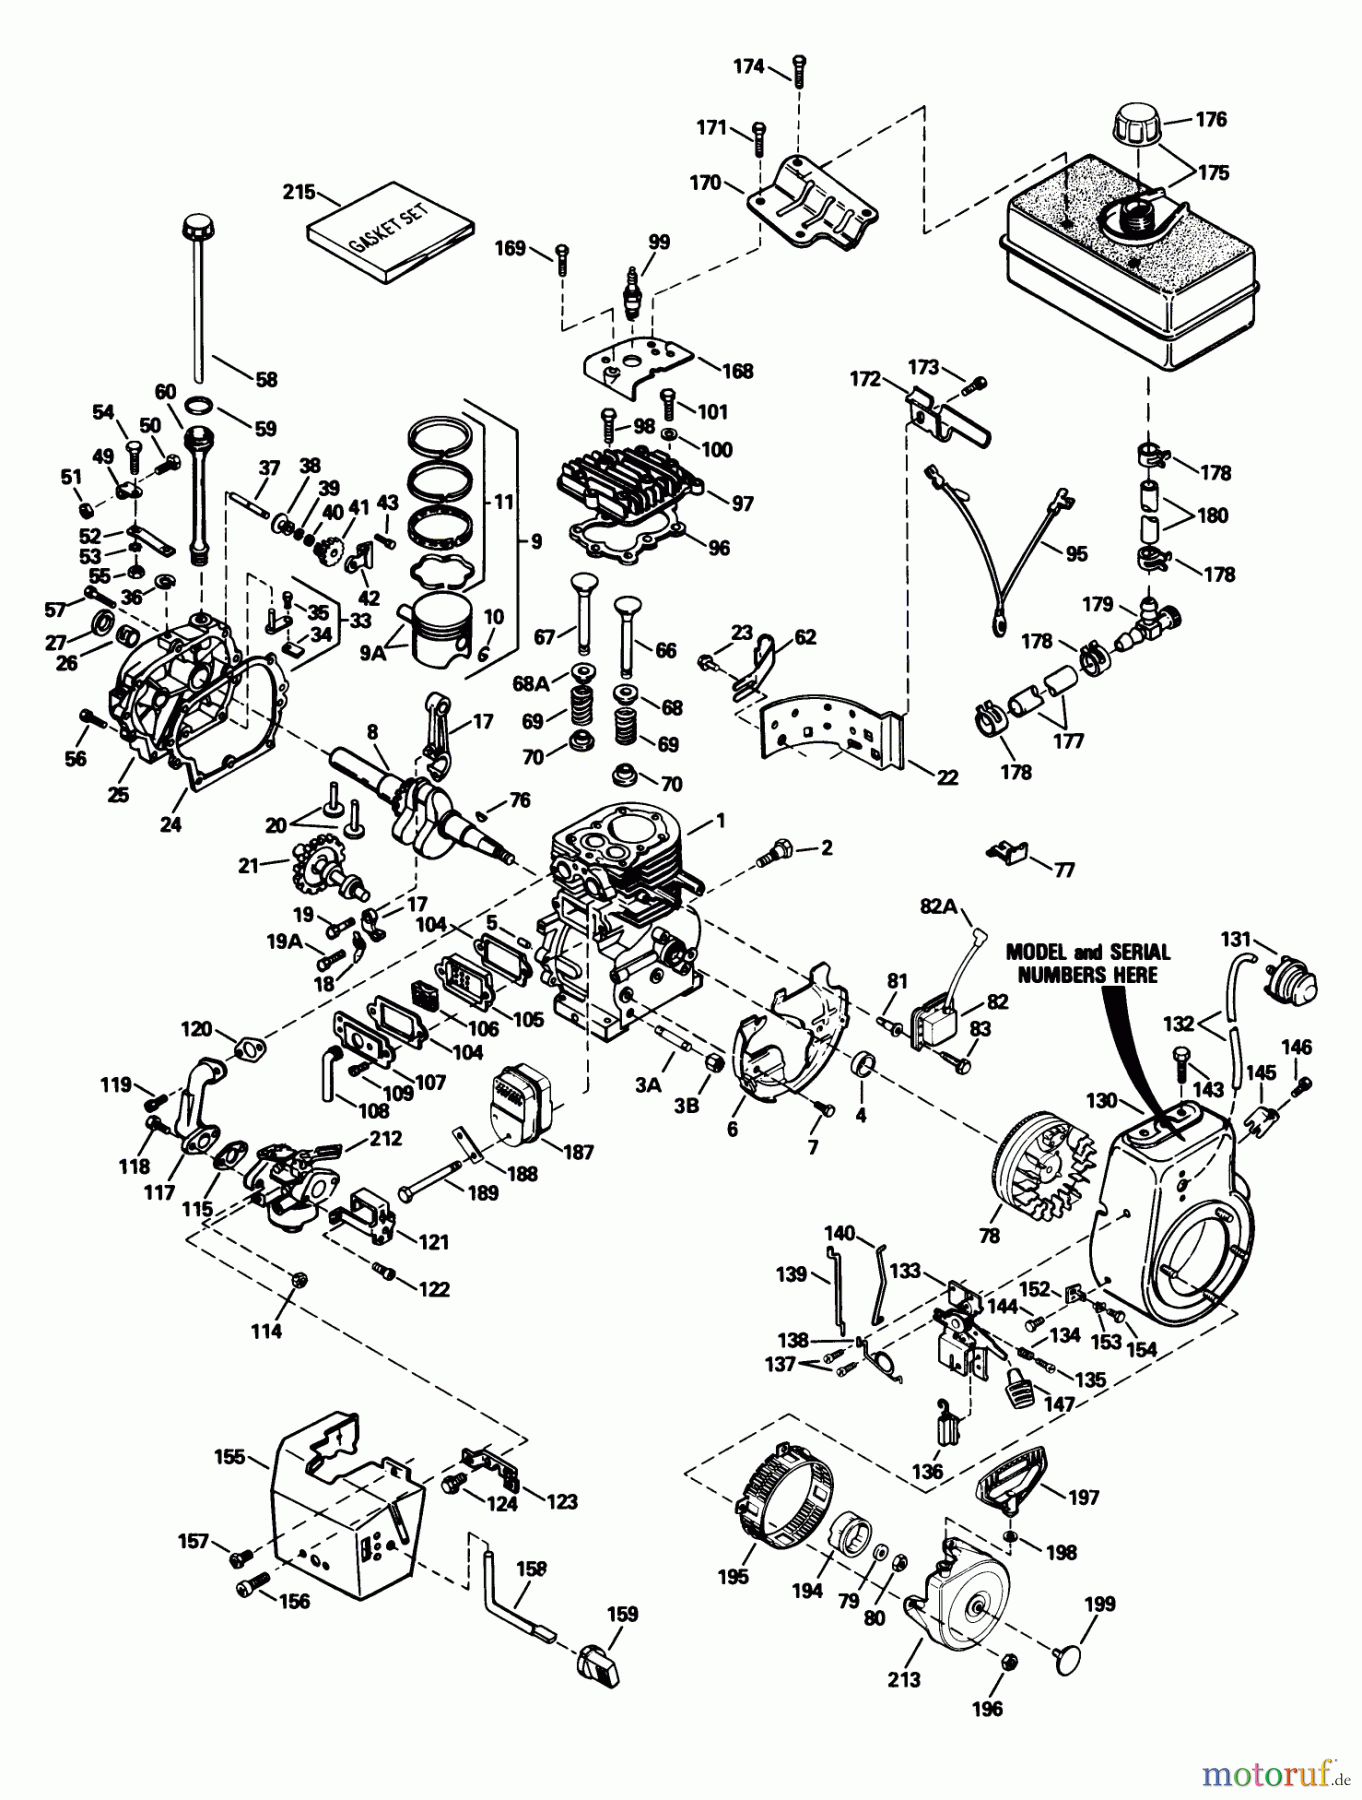  Toro Neu Snow Blowers/Snow Throwers Seite 1 38543 (824) - Toro 824 Power Shift Snowthrower, 1993 (3900001-3999999) ENGINE TECUMSEH MODEL NO. HM80-155337P